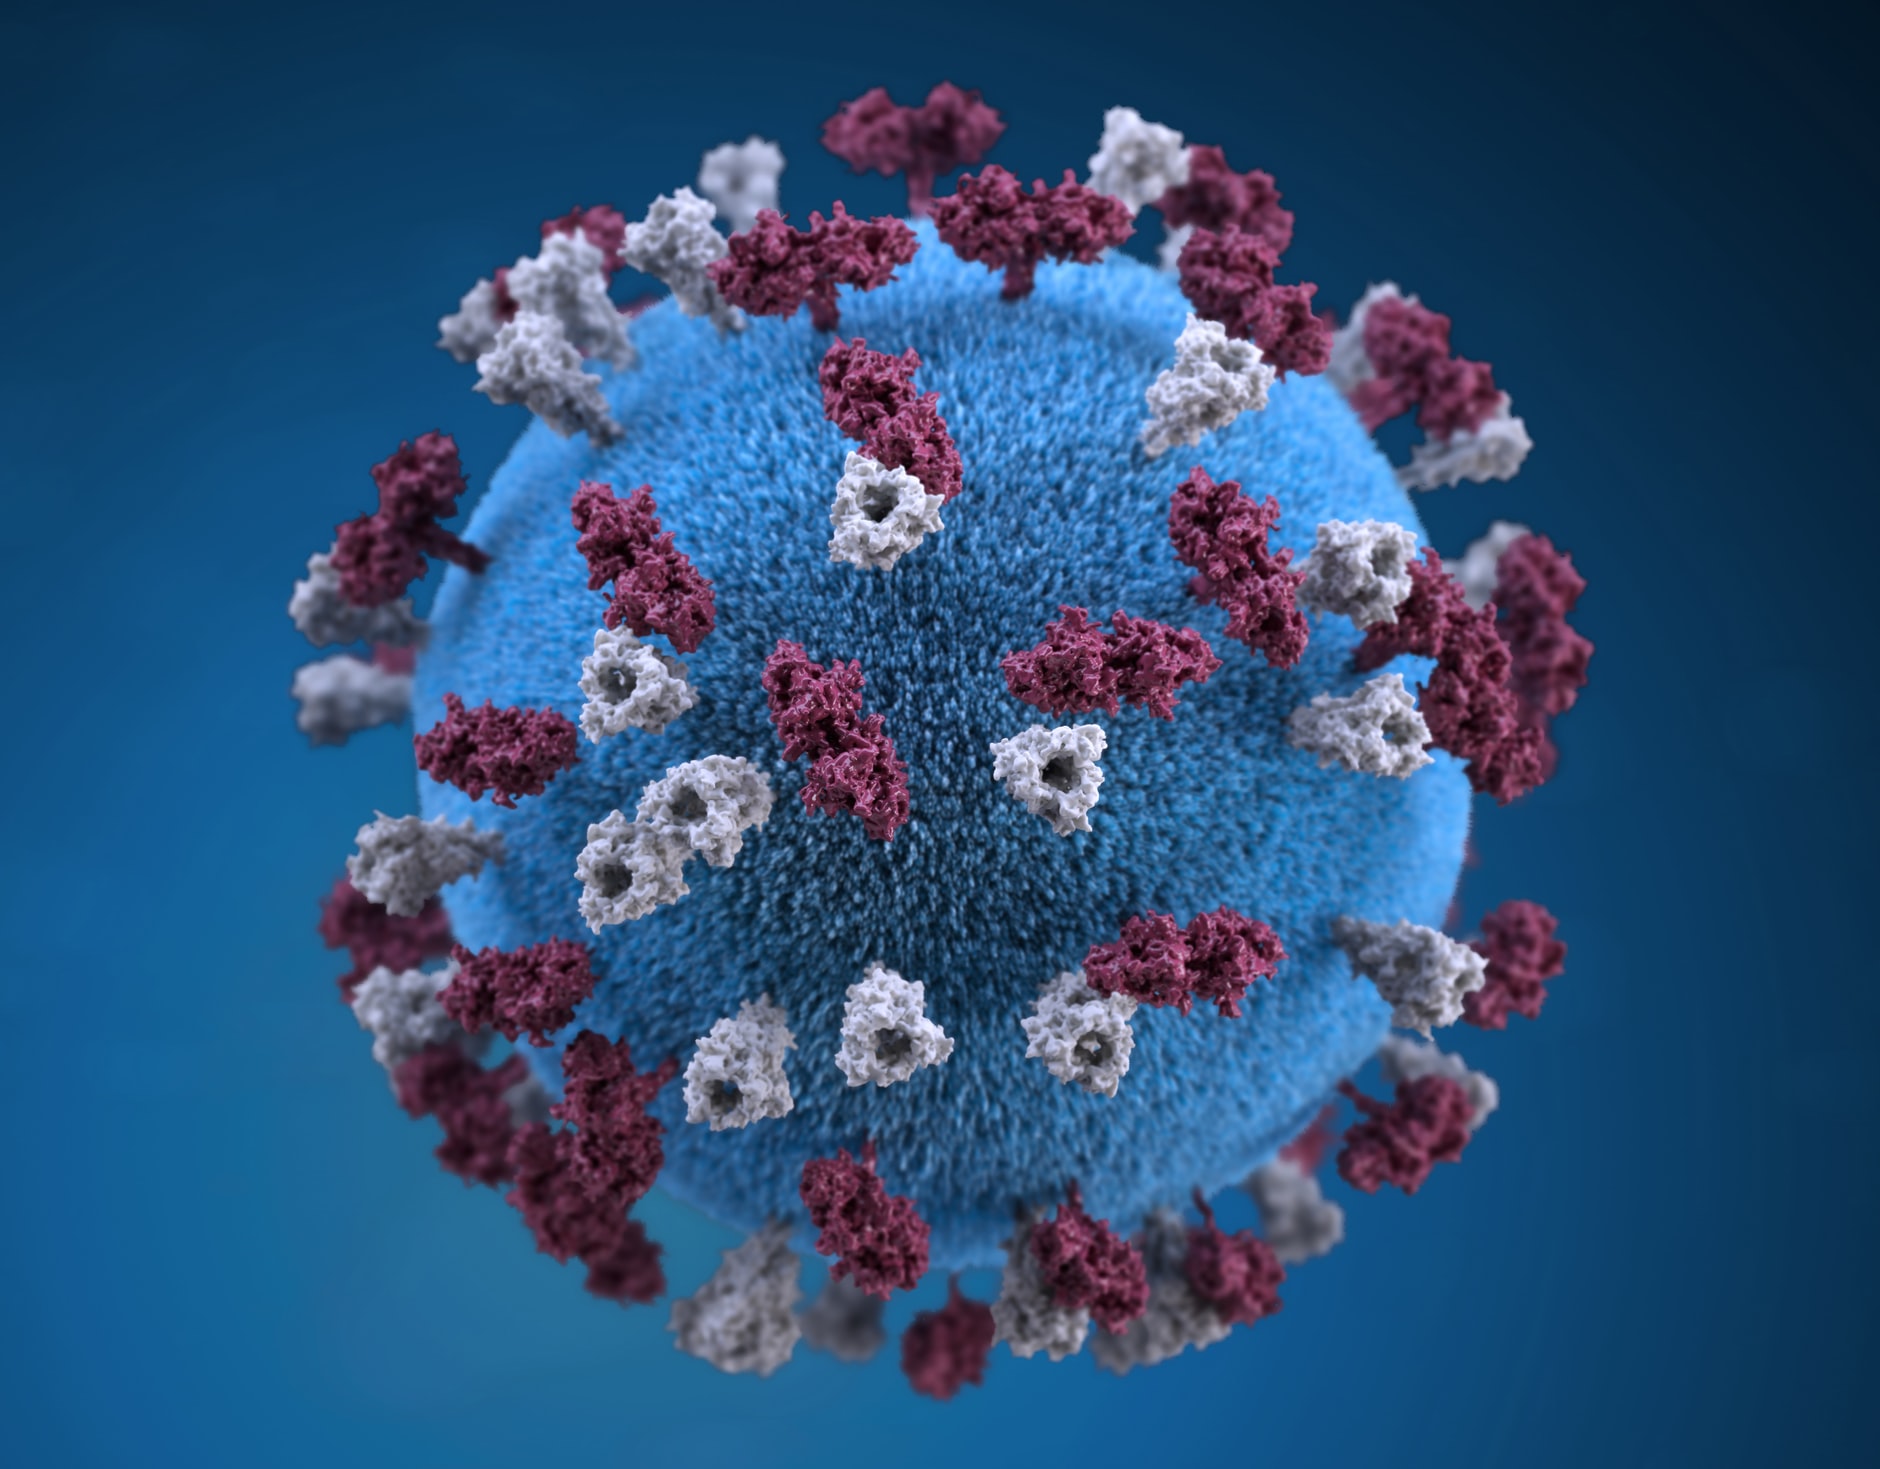 Coronavirus: come trattare i dati personali nell’emergenza